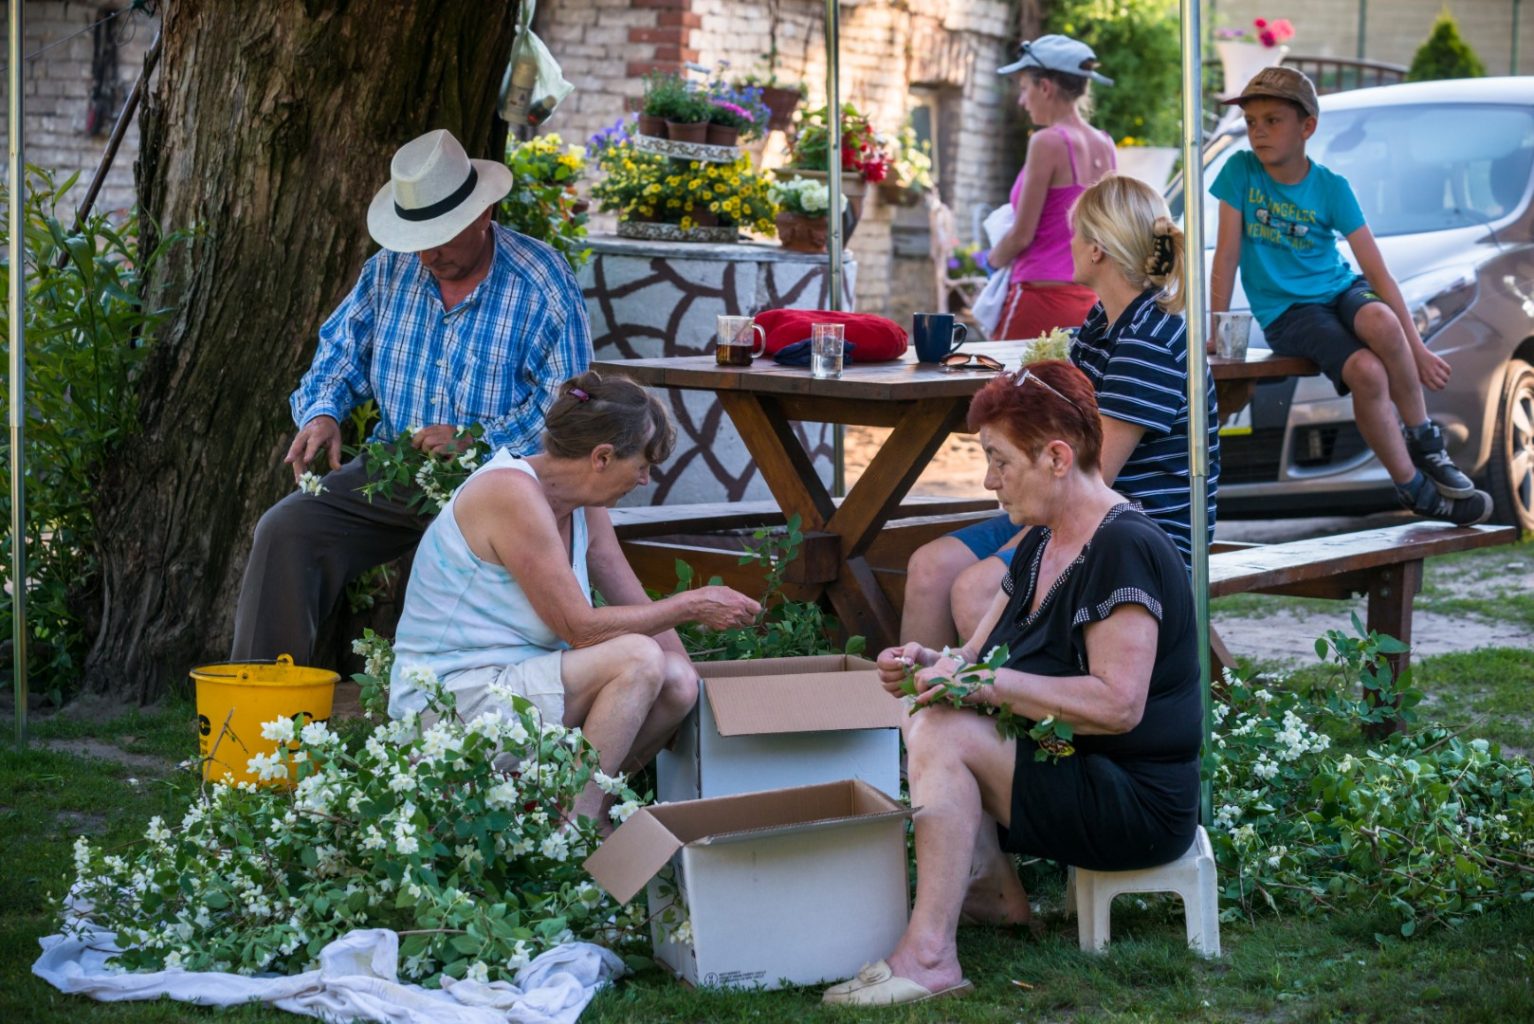 Grupa osób siedzi w ogrodzie i wyrywa płatki ze ściętych kwiatów, a następnie wrzuca je do kartonów